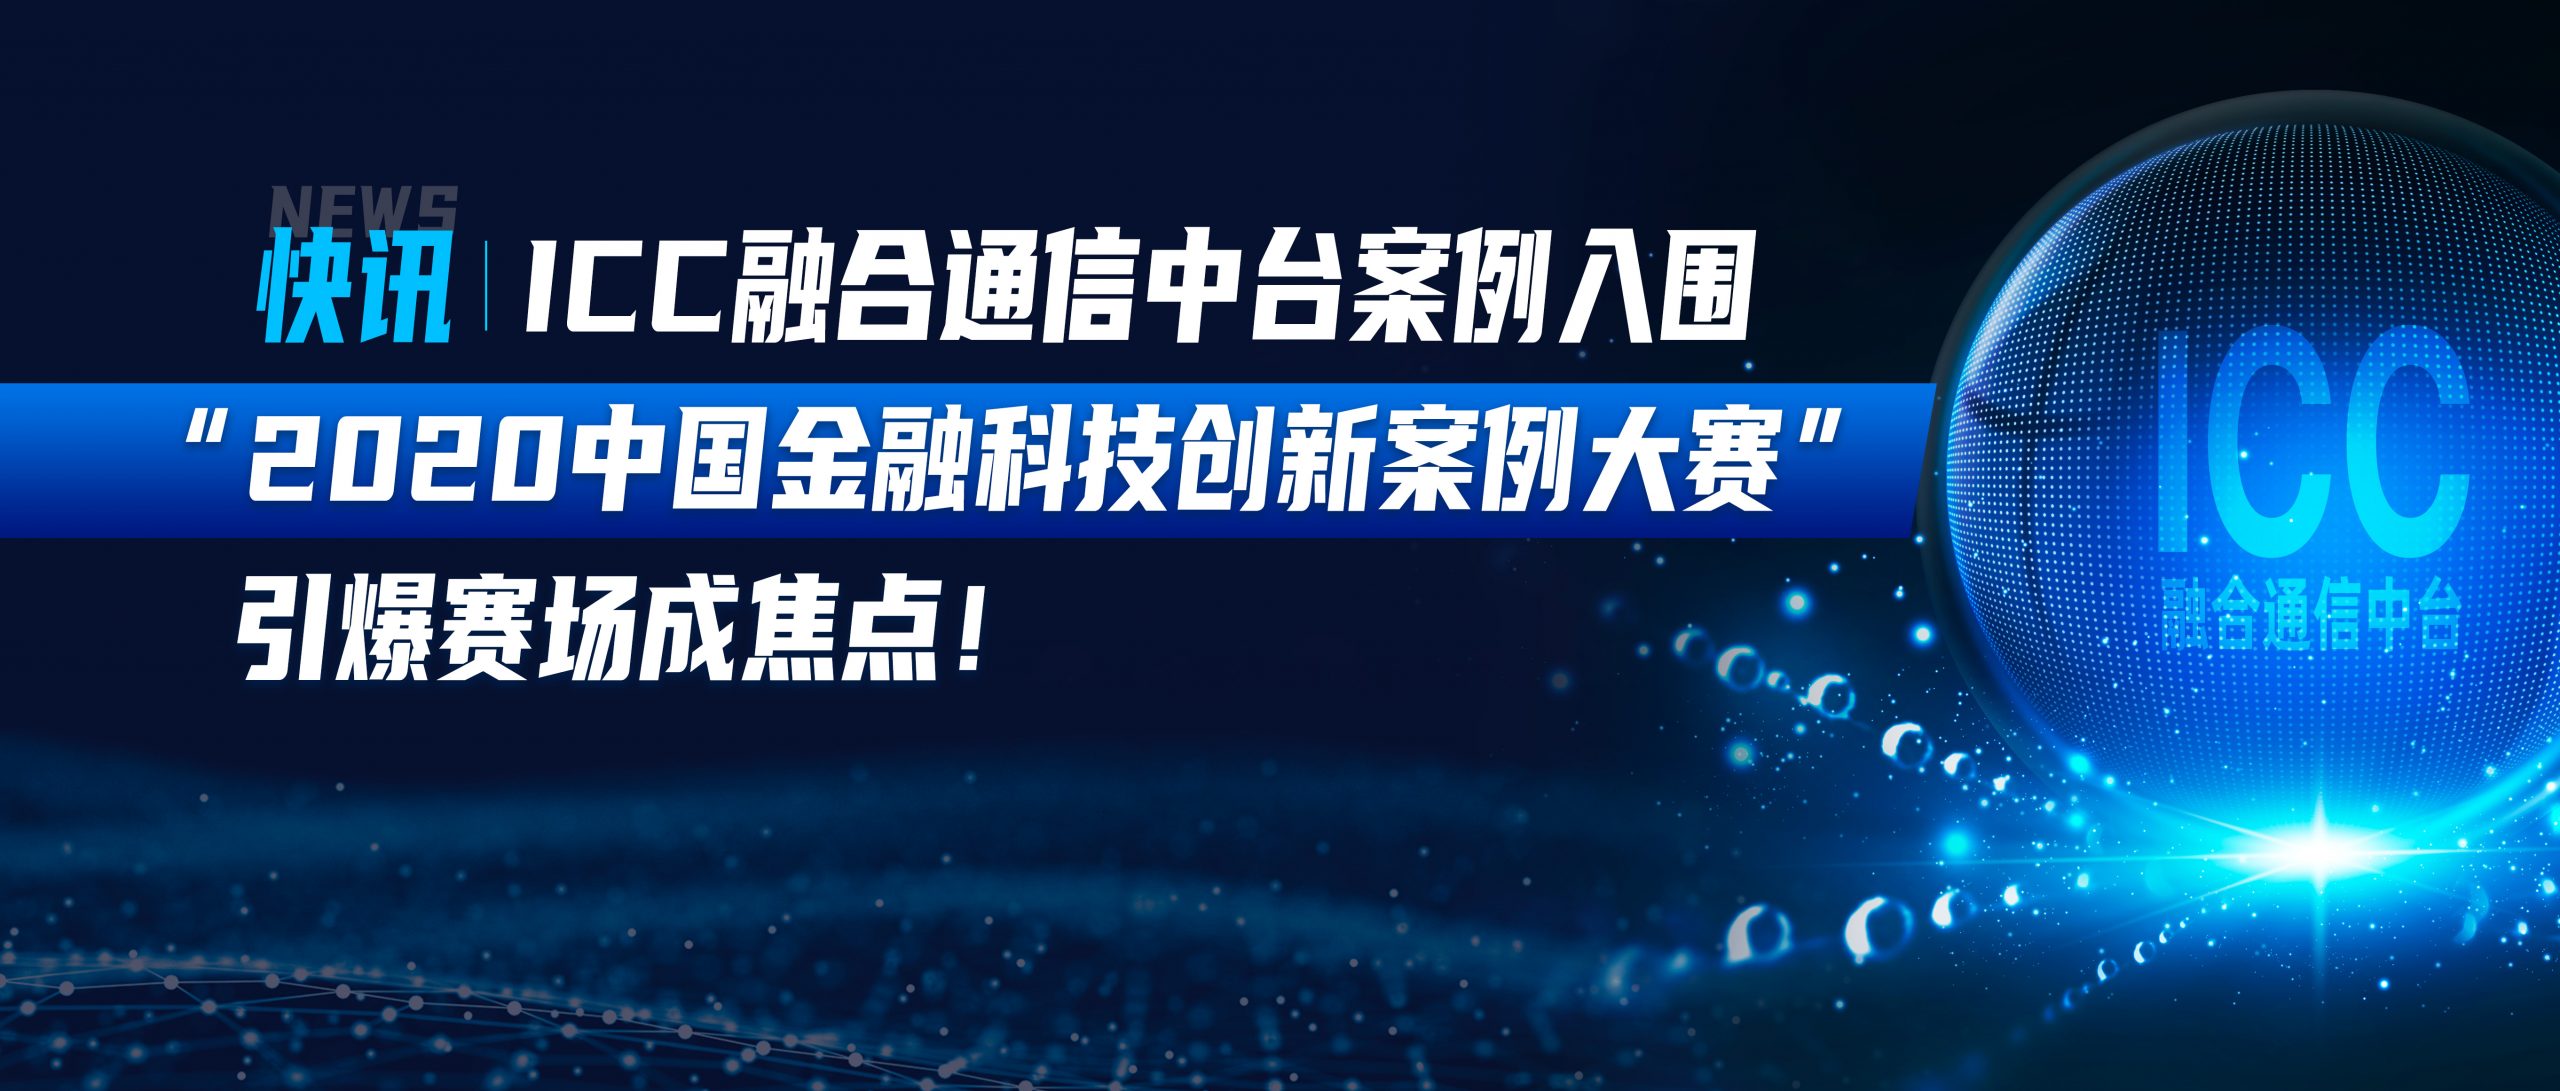 快讯| ICC融合通信中台案例入围 “2020中国金融科技创新案例大赛”，引爆赛场成焦点！